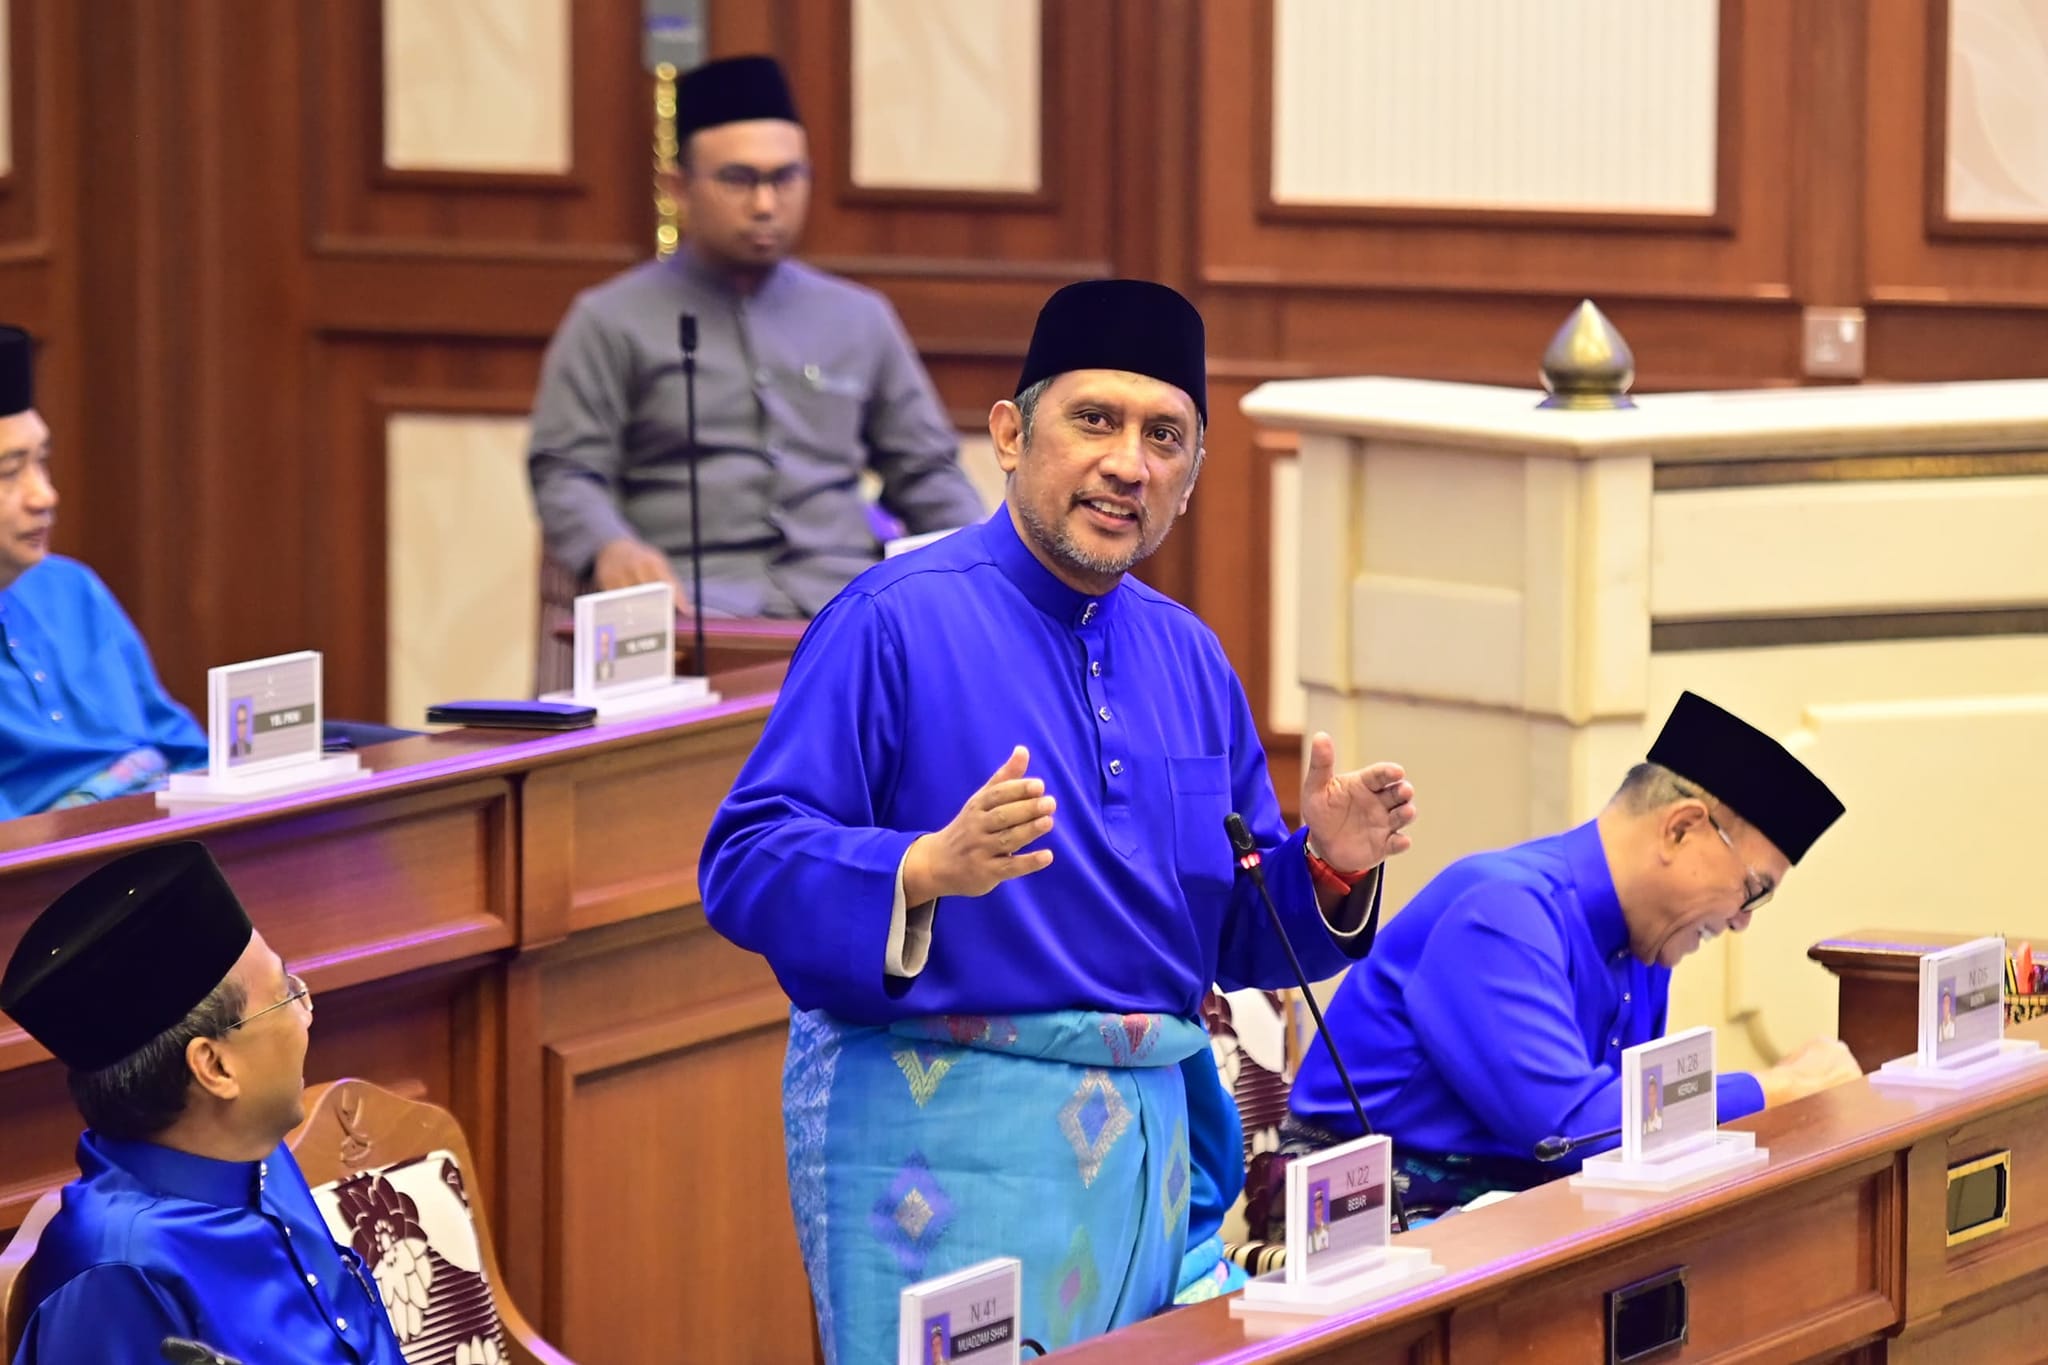 ADUN Lantikan Mampu Bawa Suara Majoriti, Minoriti Rakyat Pahang – Syed Ibrahim